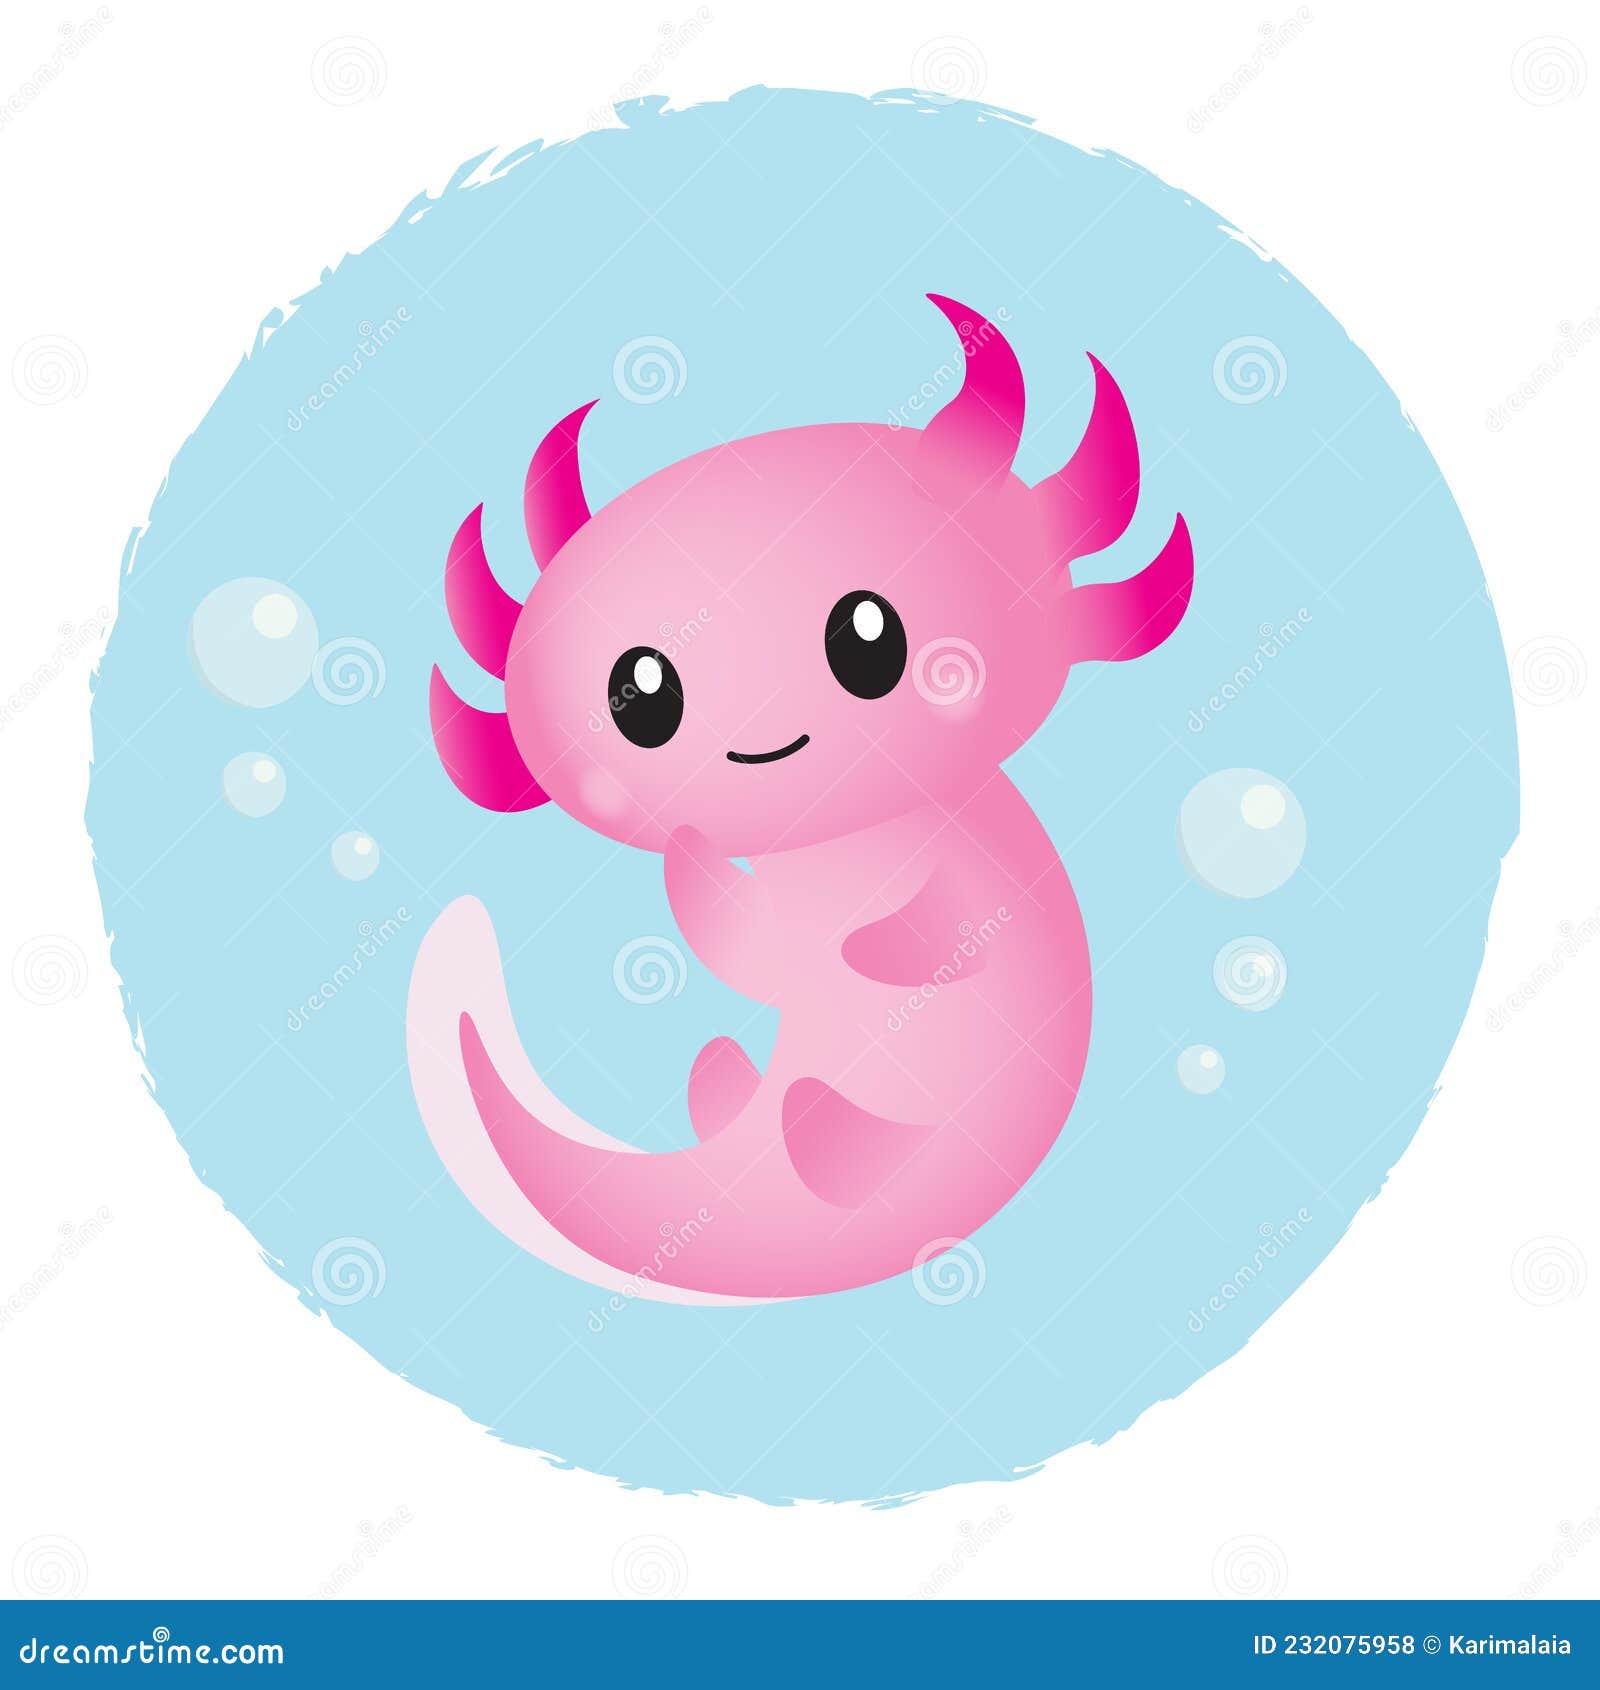 Adorable pink axolotl cartoon cake topper